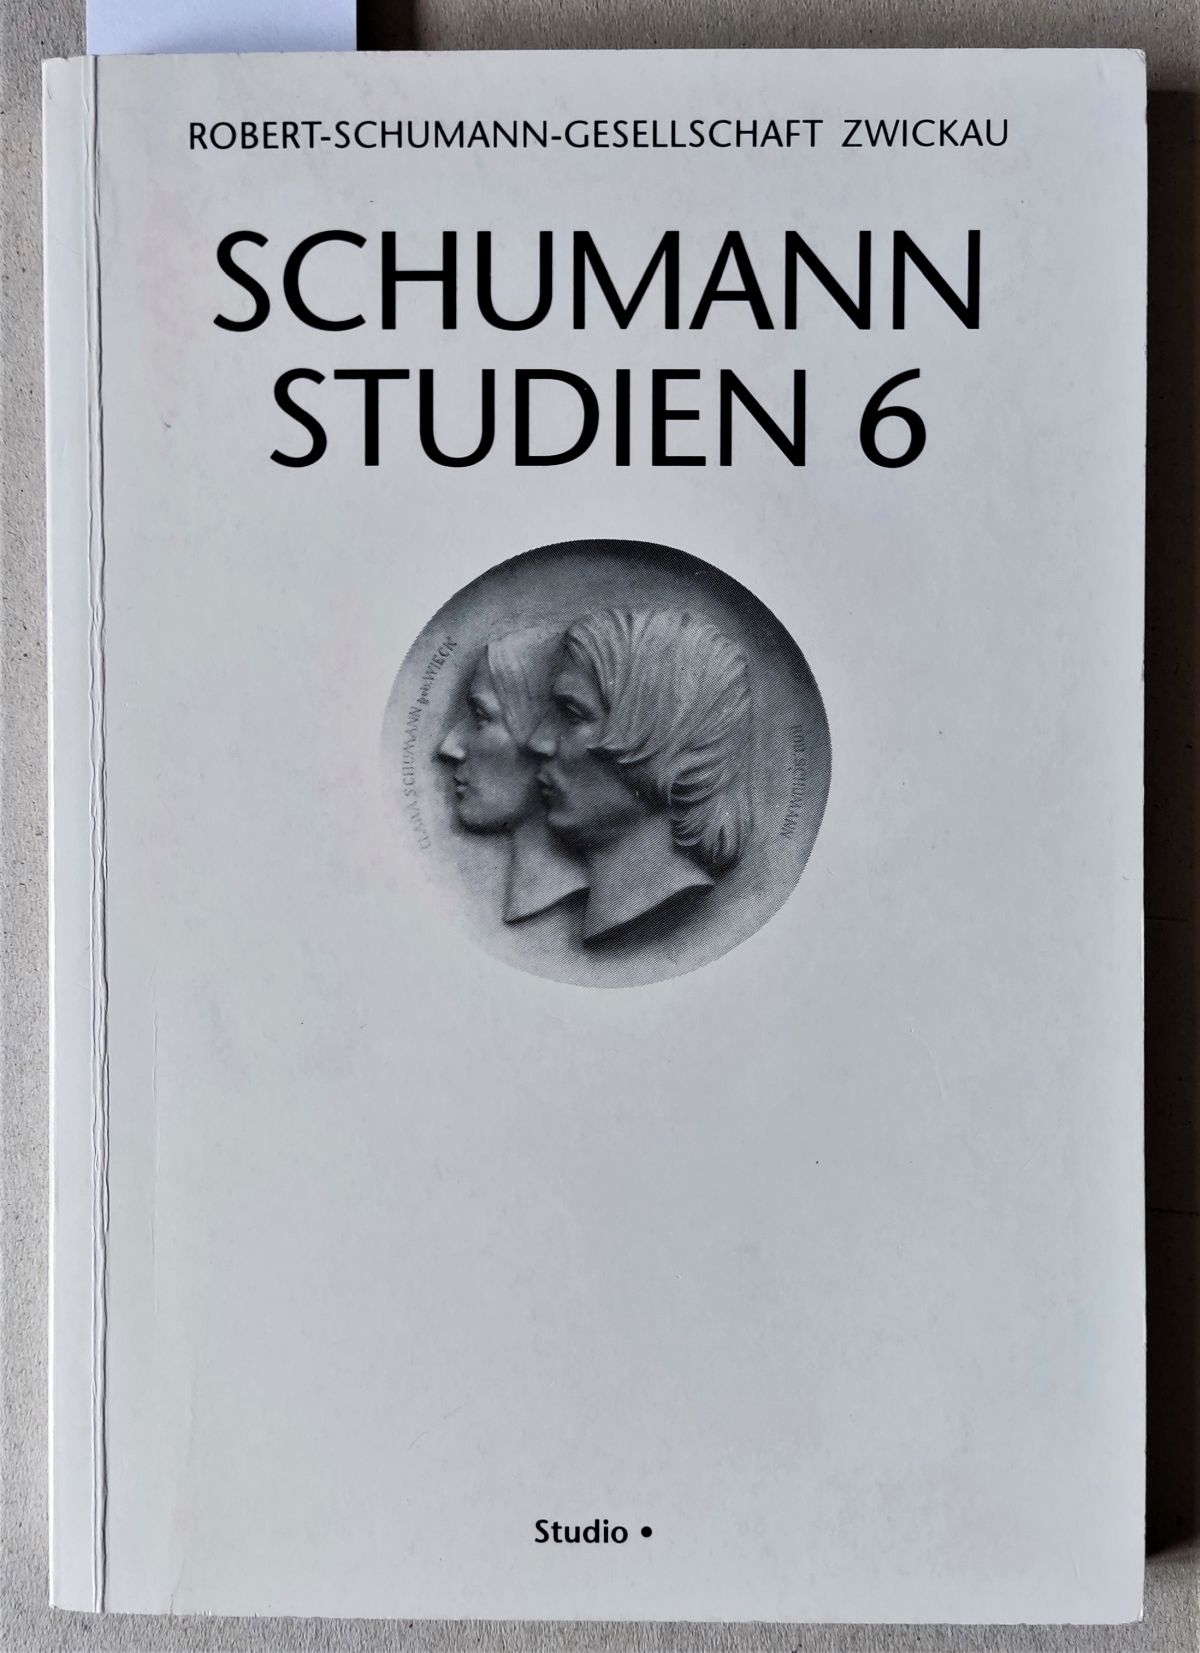 Schumann Studien 6. Im Auftrag der Schumann-Gesellschaft Zwickau. - Neuhaus [sic] Nauhaus, Gerd [Redaktion]; Bär, Ute; Krahe, Kristin R. M. (beide Mitarbeit)